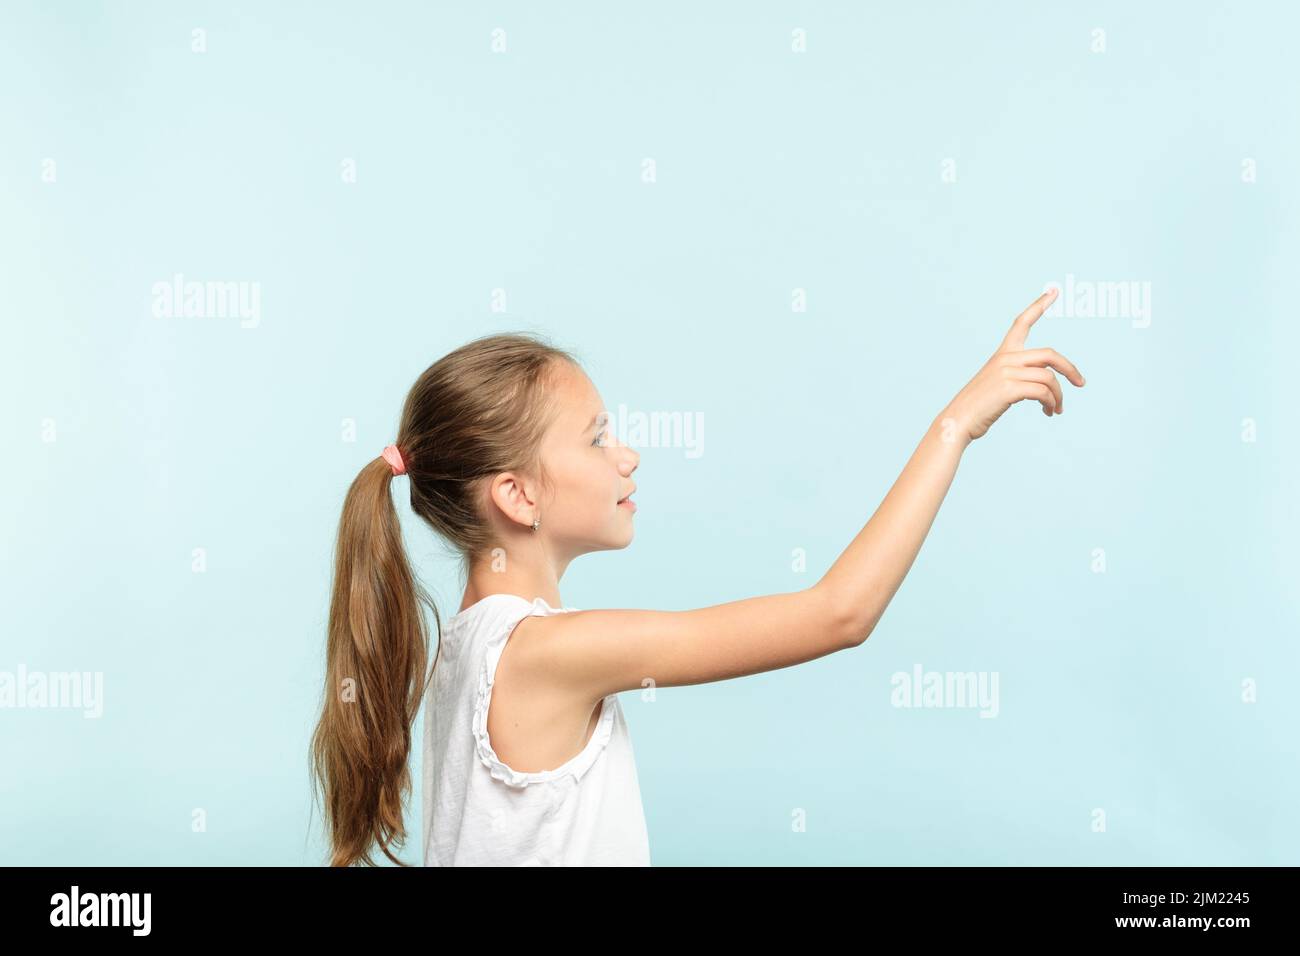 Nachdenkliches Mädchen erreicht virtuellen Knopf drücken Stockfoto